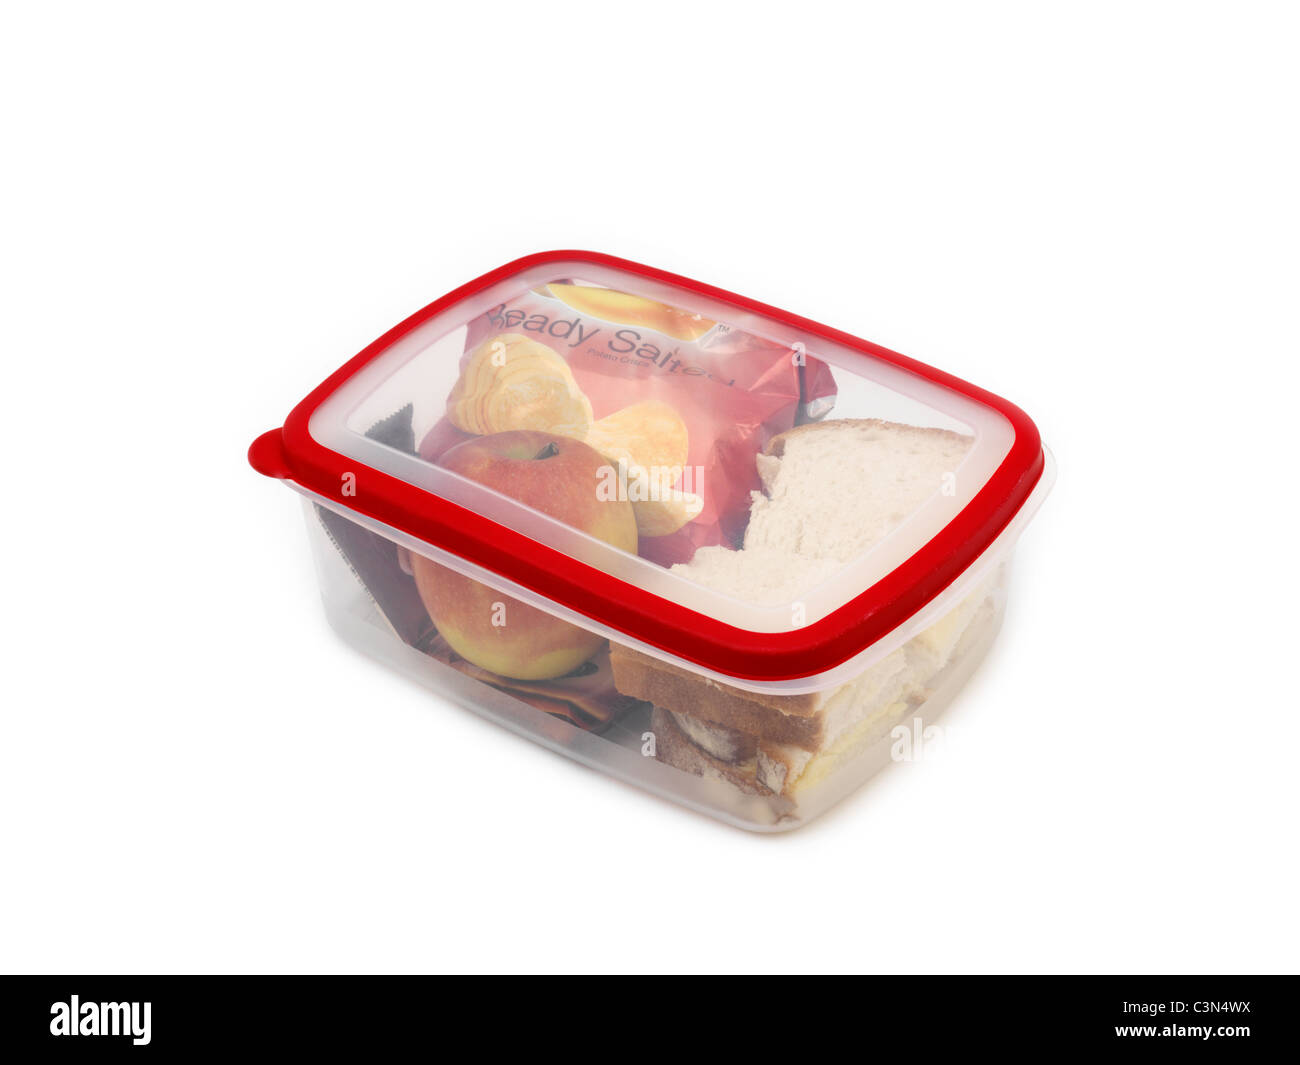 Ein Lunchpaket - Weißbrot-Käse-Sandwiches, Packung Chips, Schokoriegel und einen Apfel In eine Lunchbox Stockfoto